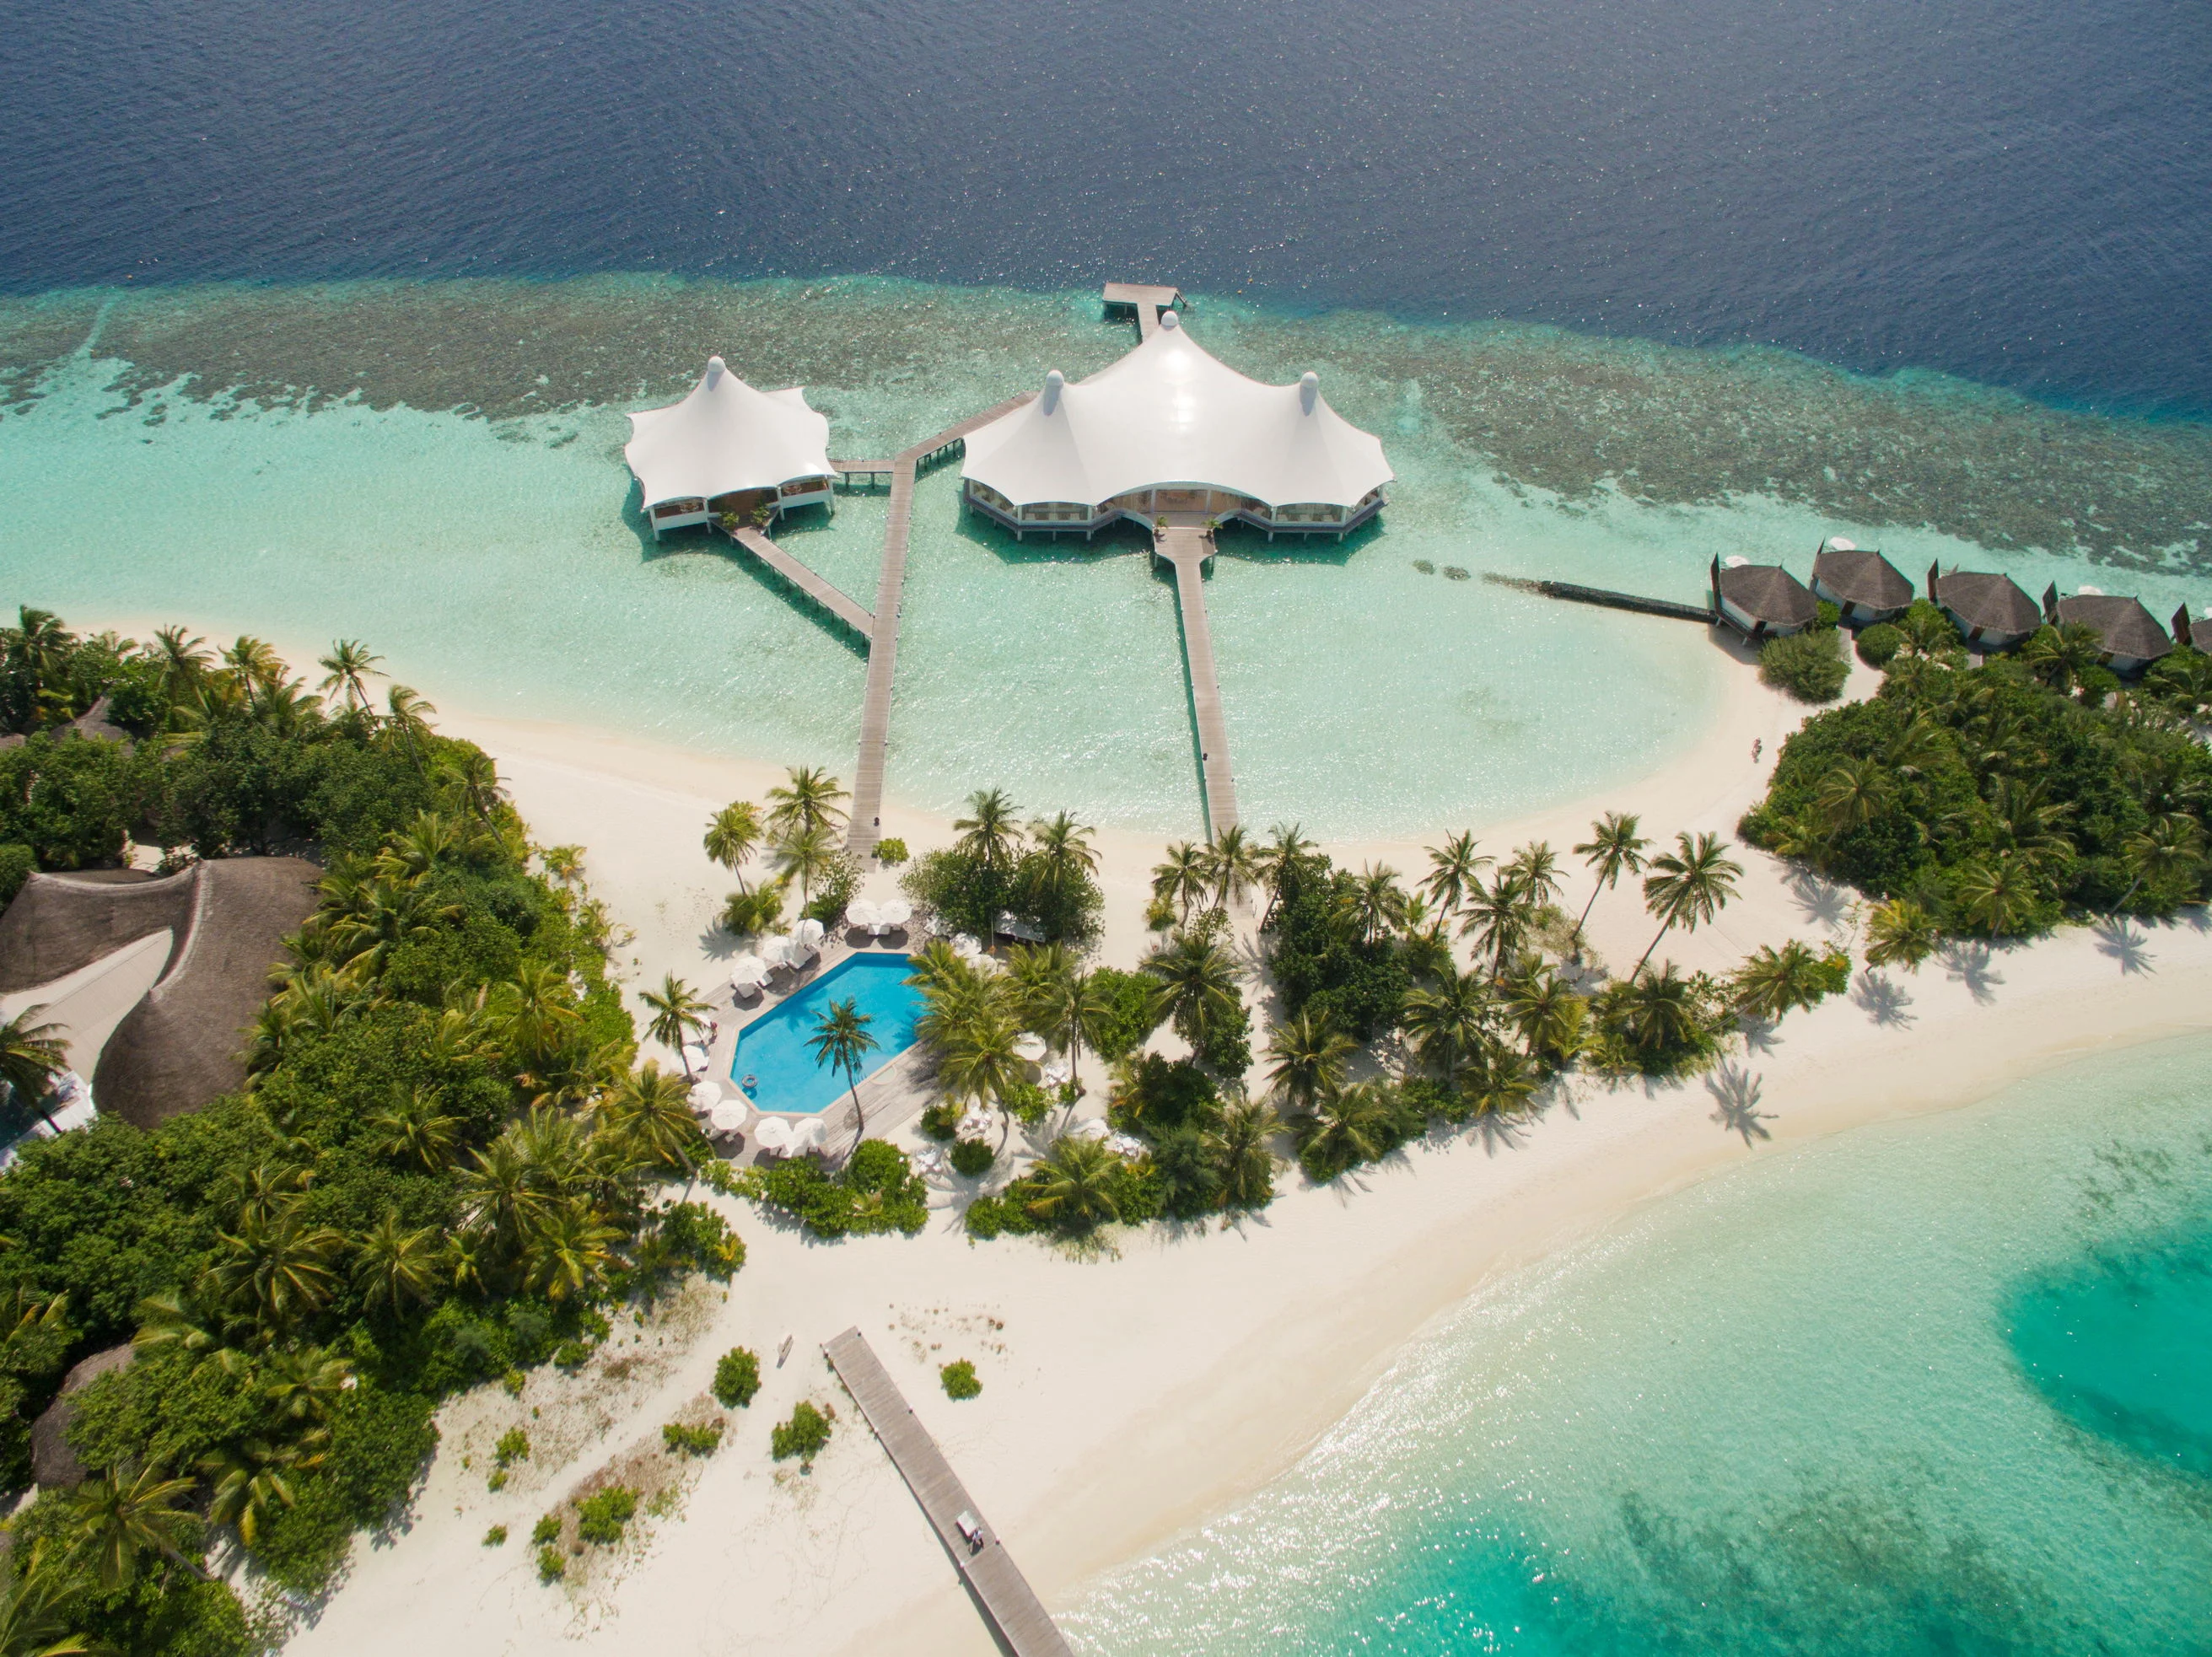 Bandos island resort. Сафари Исланд Мальдивы. Safari Island 4 Мальдивы. Бандос Мальдивы 4. Остров Bandos Мальдивы.